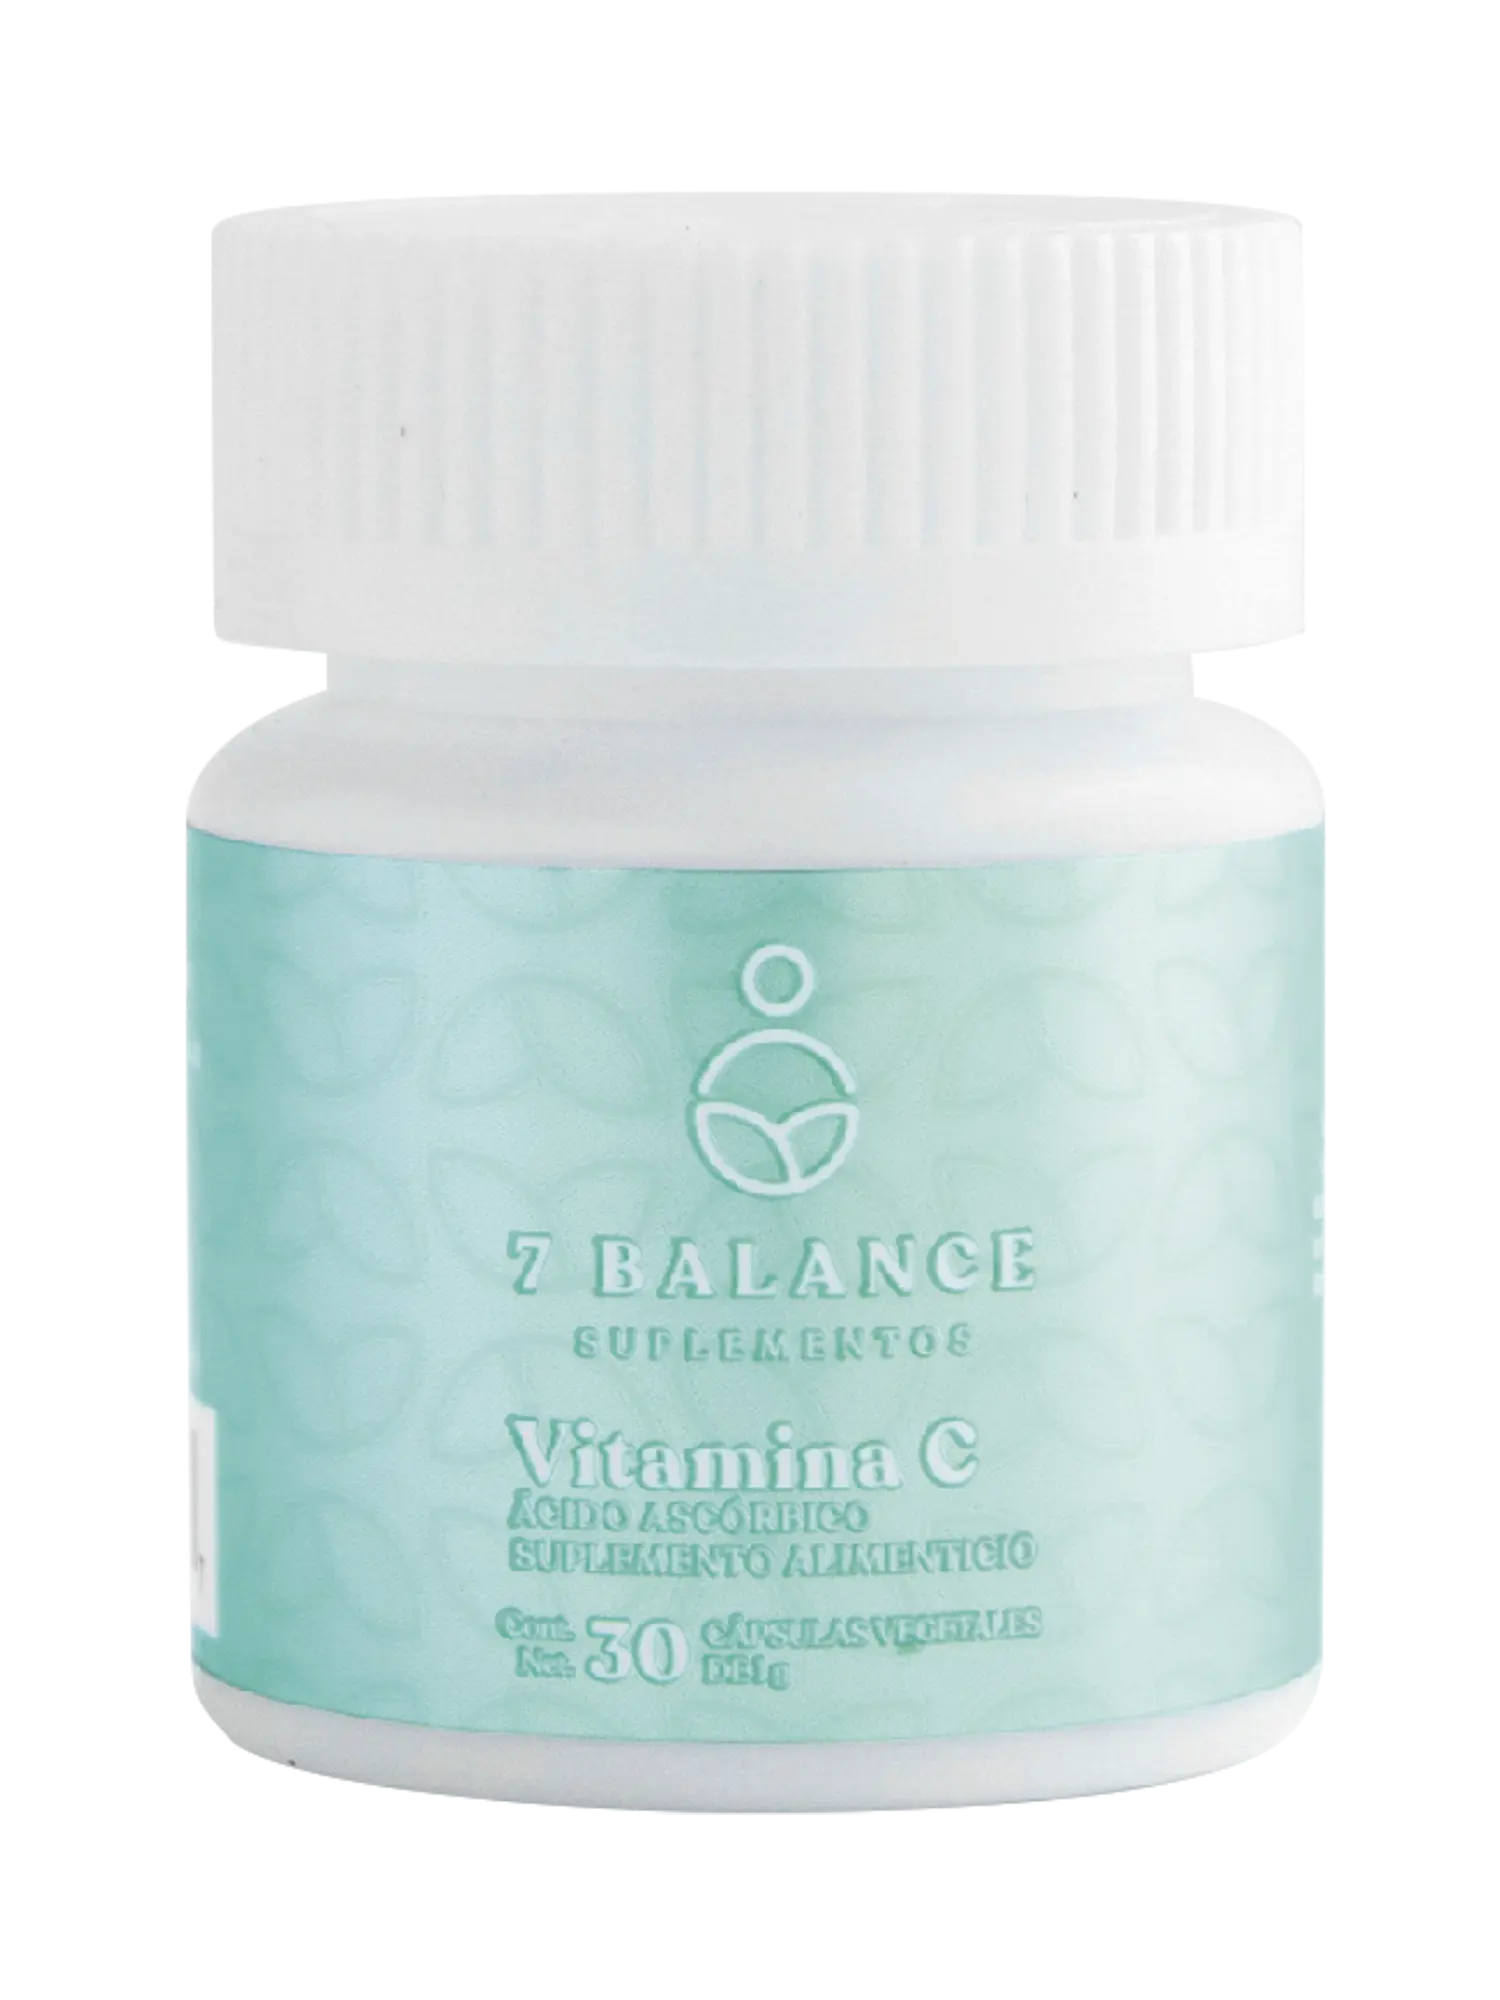 Vitamina C 7 Balance - 1g - PURESUPPLY